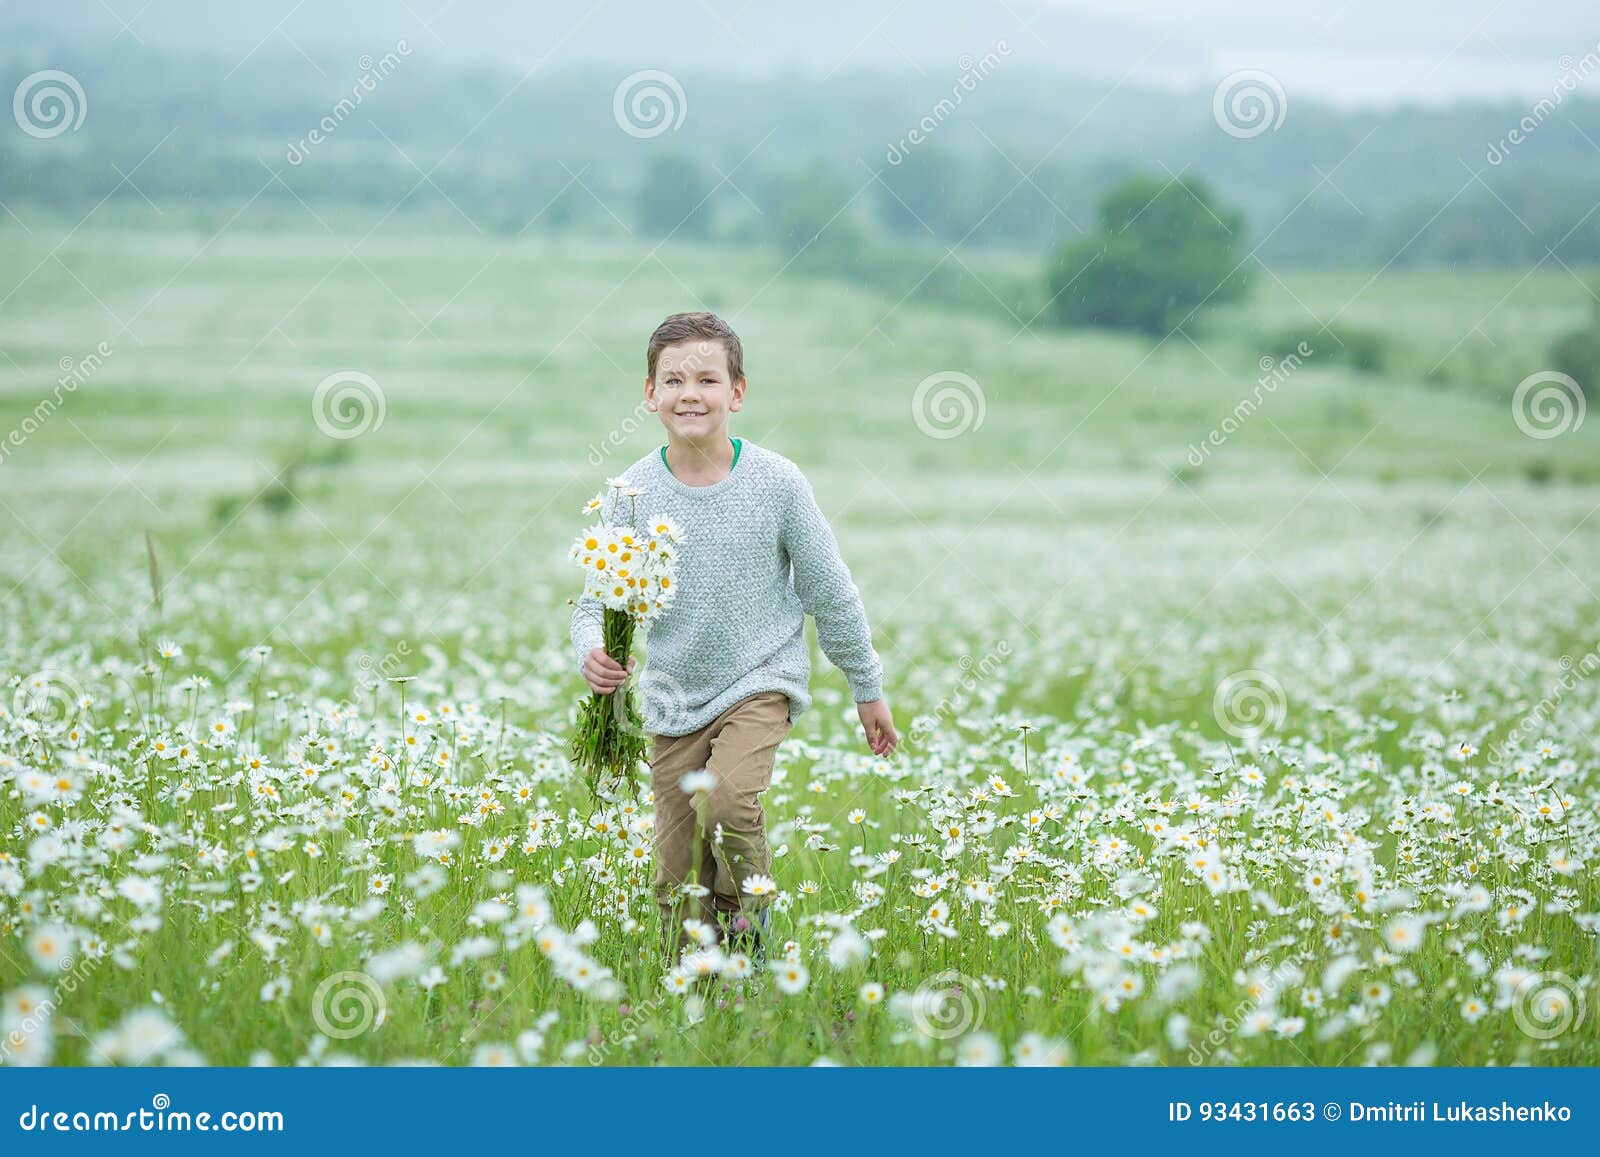 雨和阳光与举行伞和赛跑的一个微笑的男孩通过野花dundelions春黄菊的雏菊草甸. 雨和阳光与举行伞和赛跑通过野花dundelions春黄菊雏菊草甸和对花束时髦负的一个微笑的男孩穿戴在白色更甜